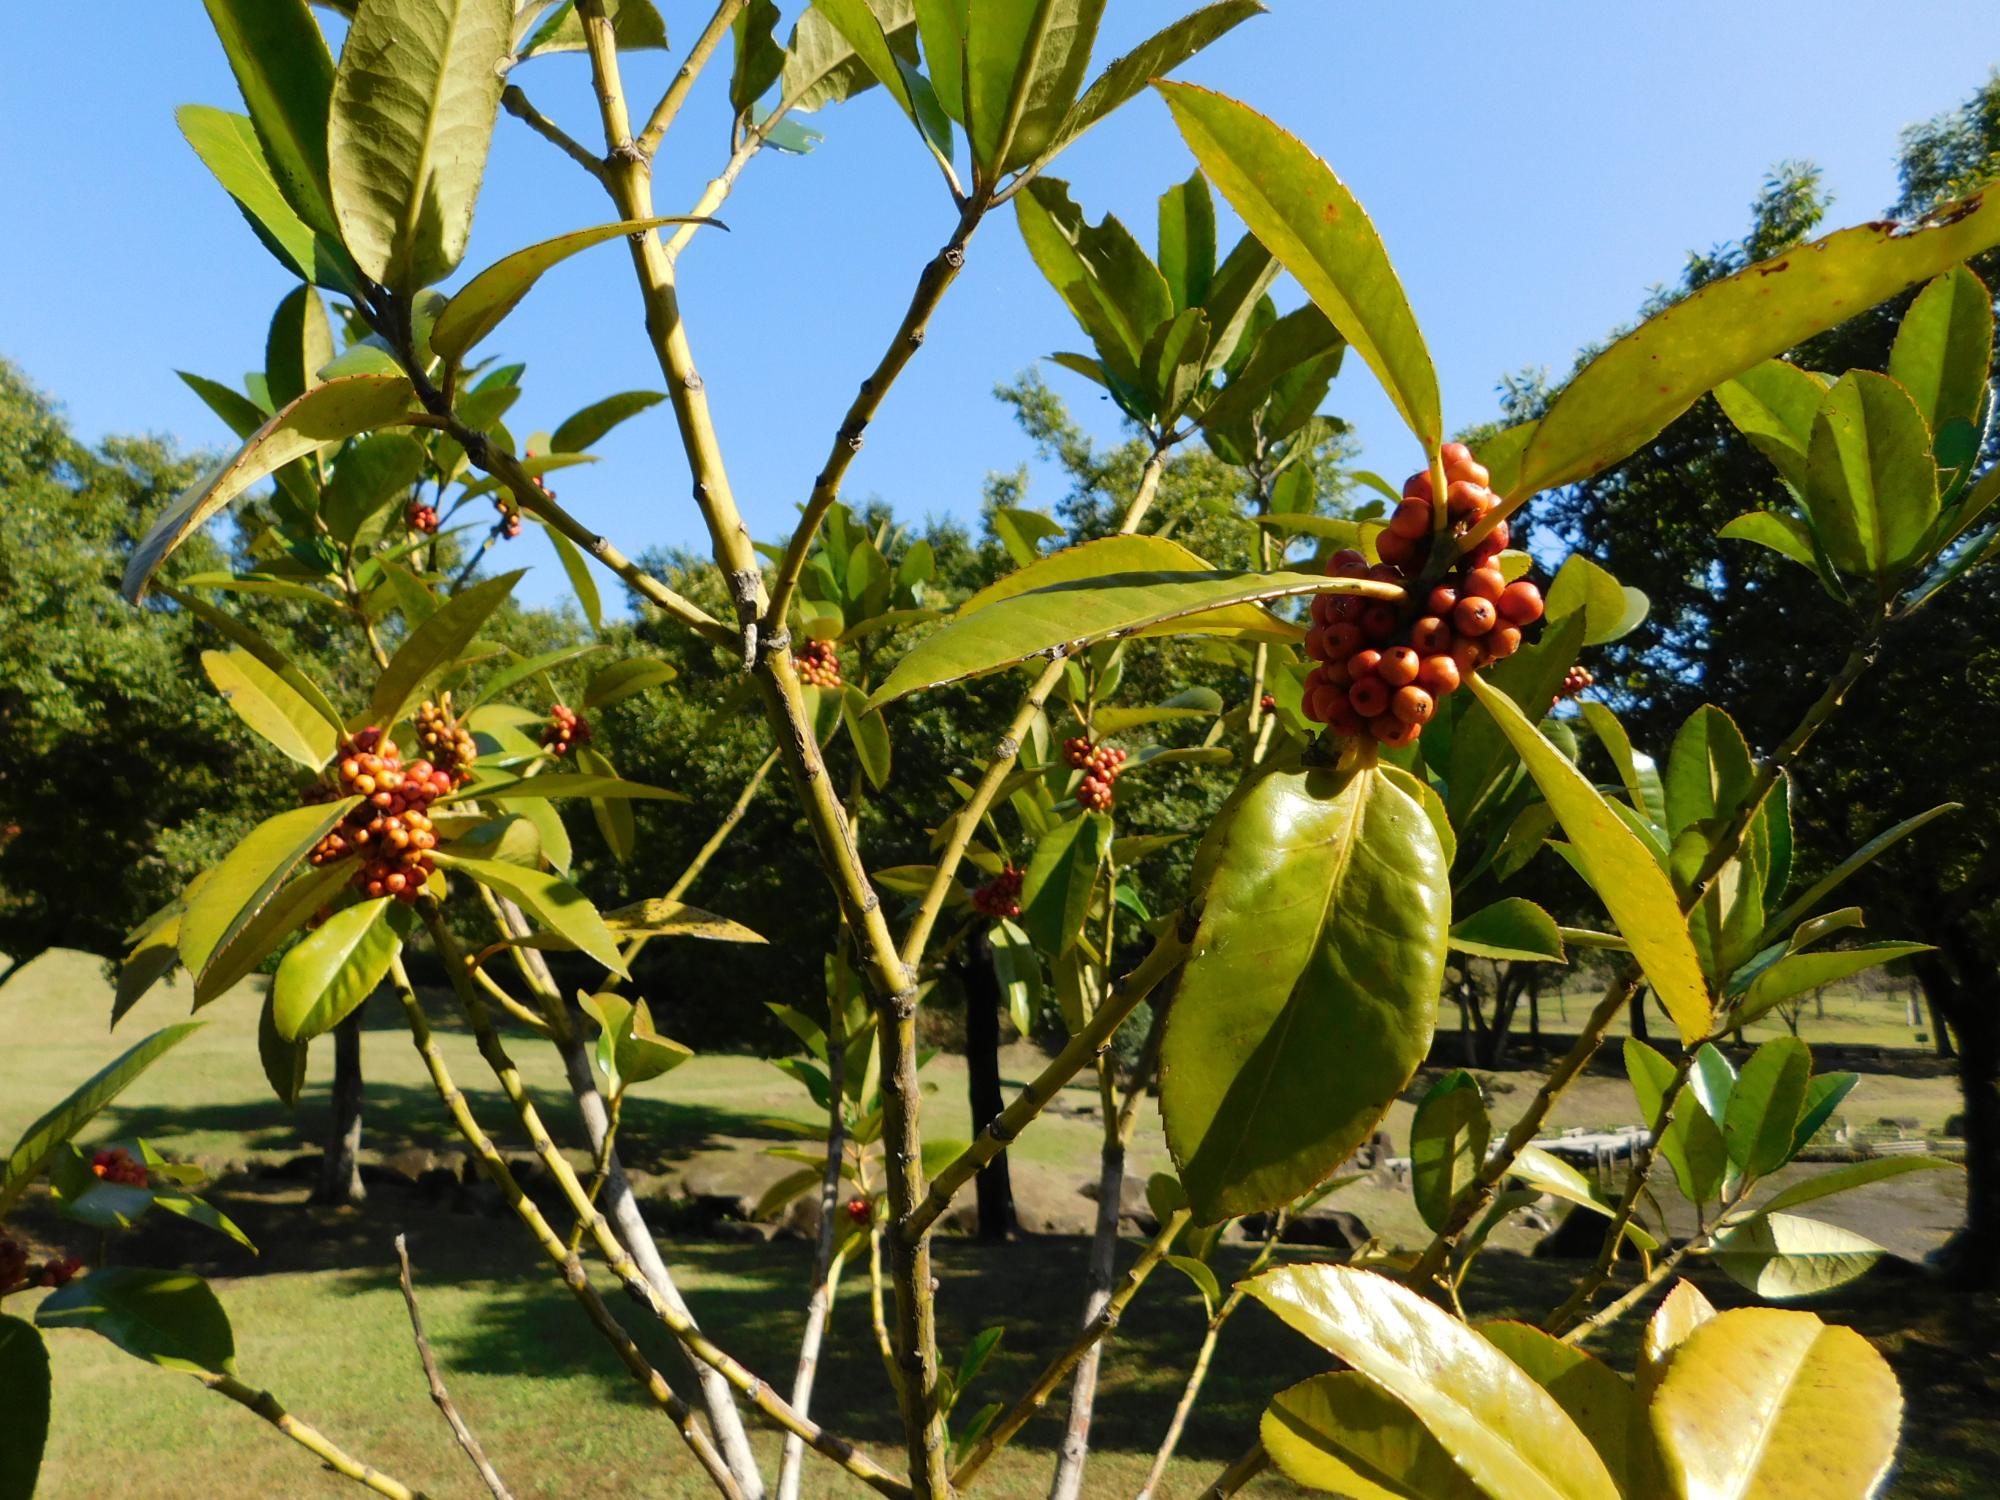 中池近くの沿道沿いのタラヨウの木が赤い実をつけています。タラヨウは、葉書の木とも呼ばれています。